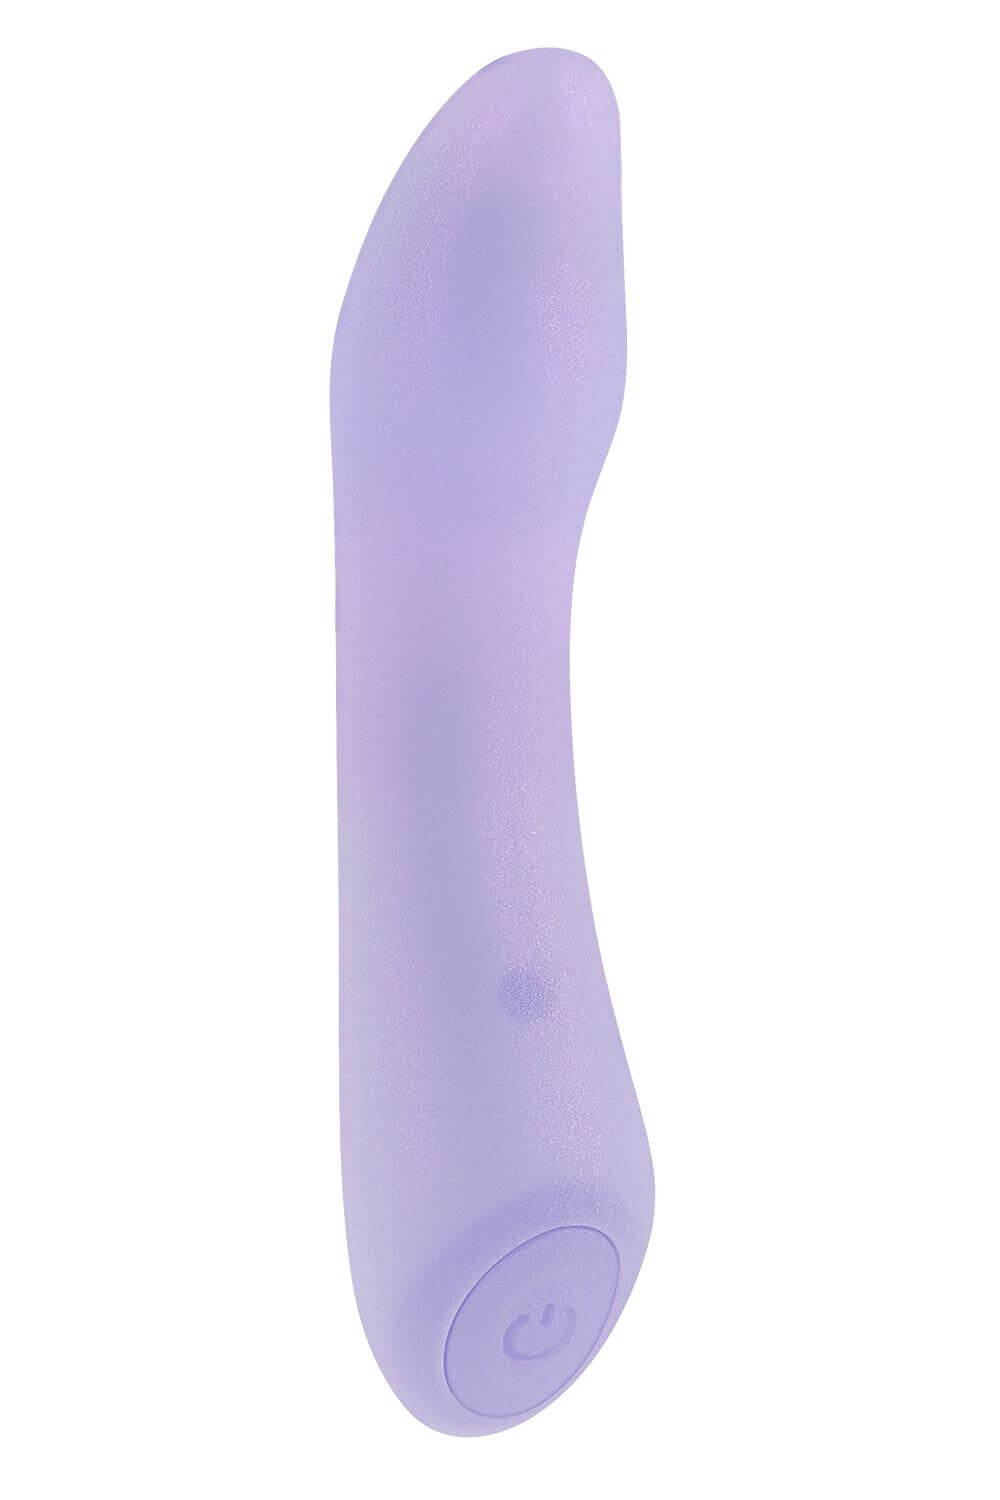 Playboy Euphoria - akkus, vízálló G-pont vibrátor (lila) kép